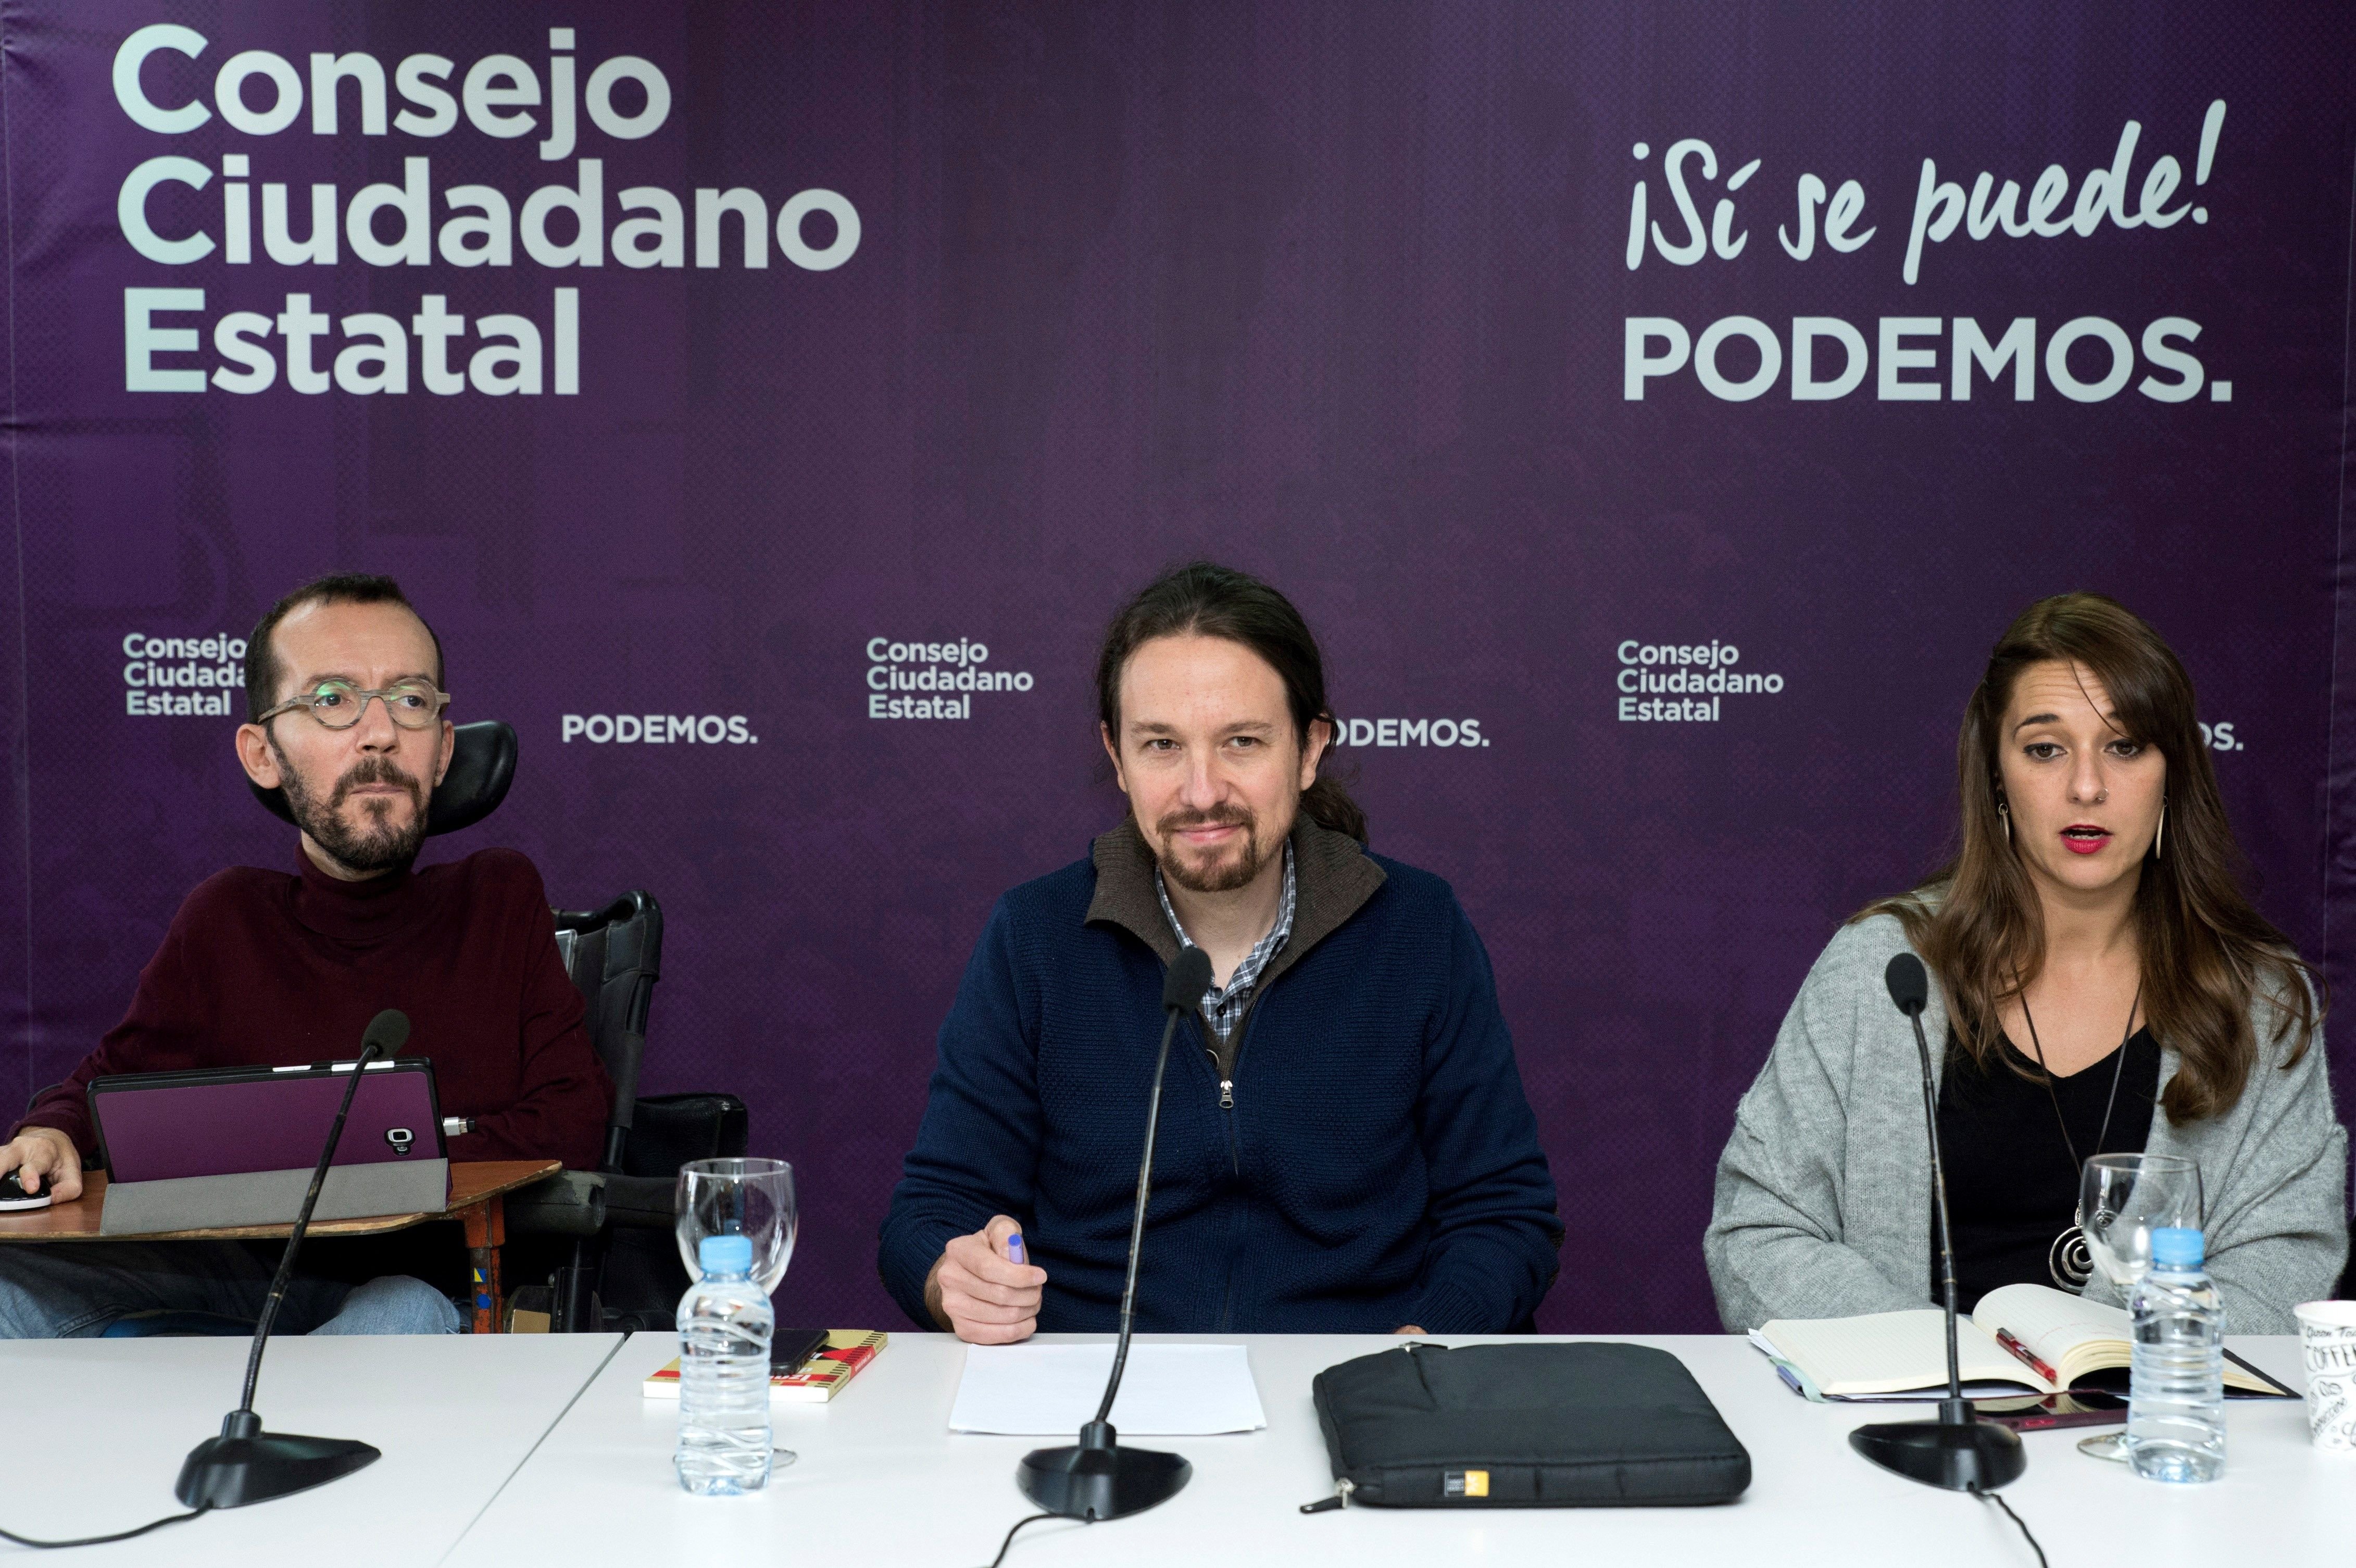 Pablo Iglesias dona per trencada la majoria: "No es pot governar per decret"